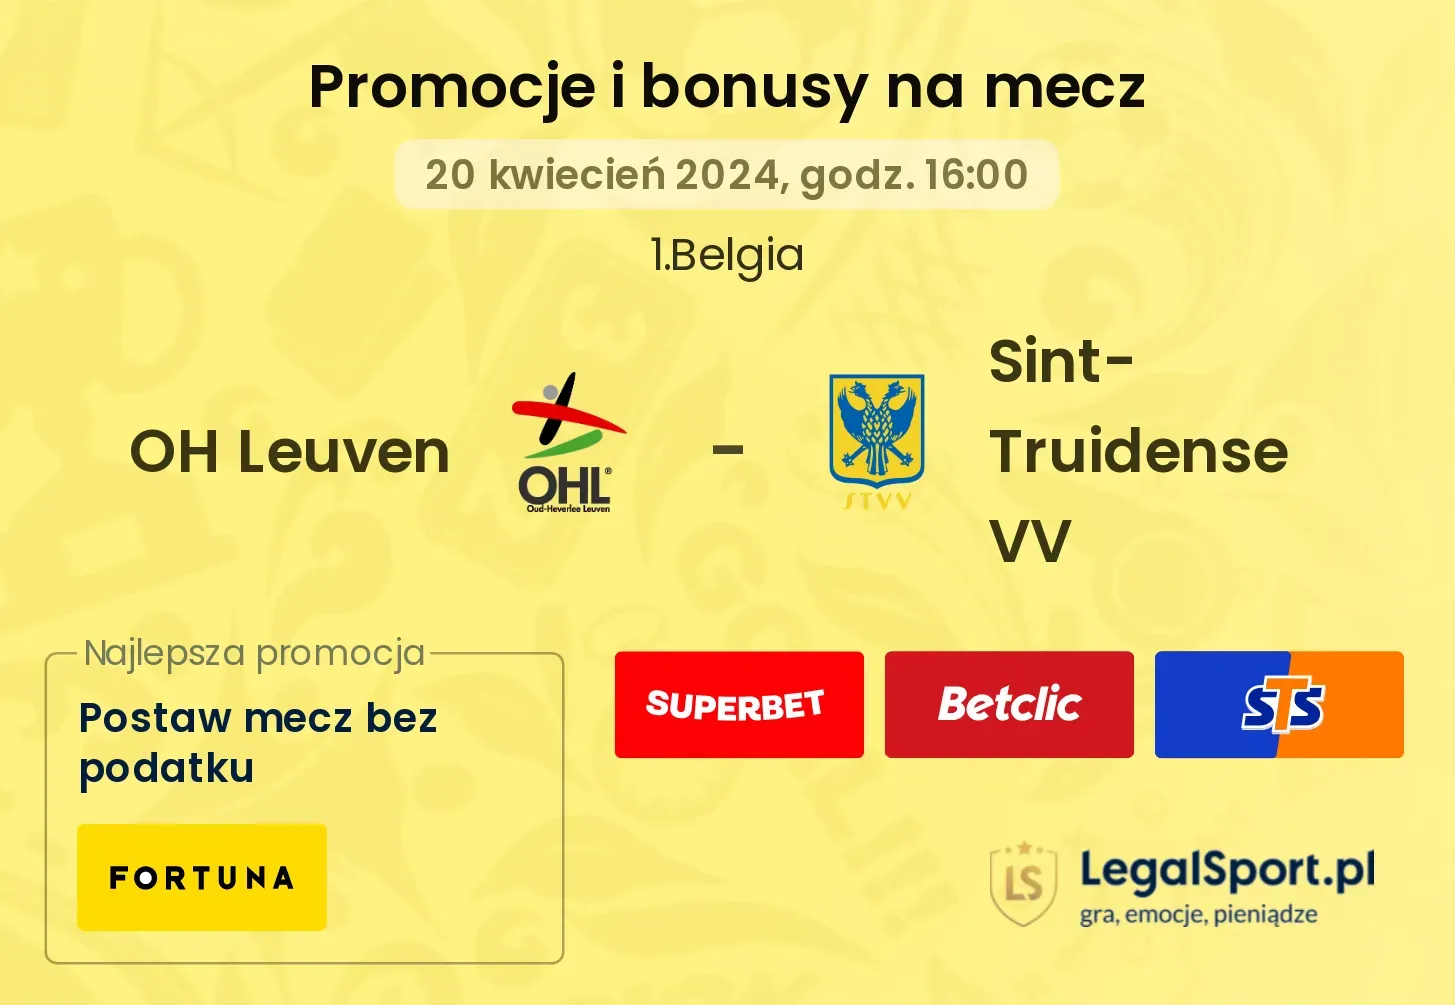 OH Leuven - Sint-Truidense VV promocje bonusy na mecz